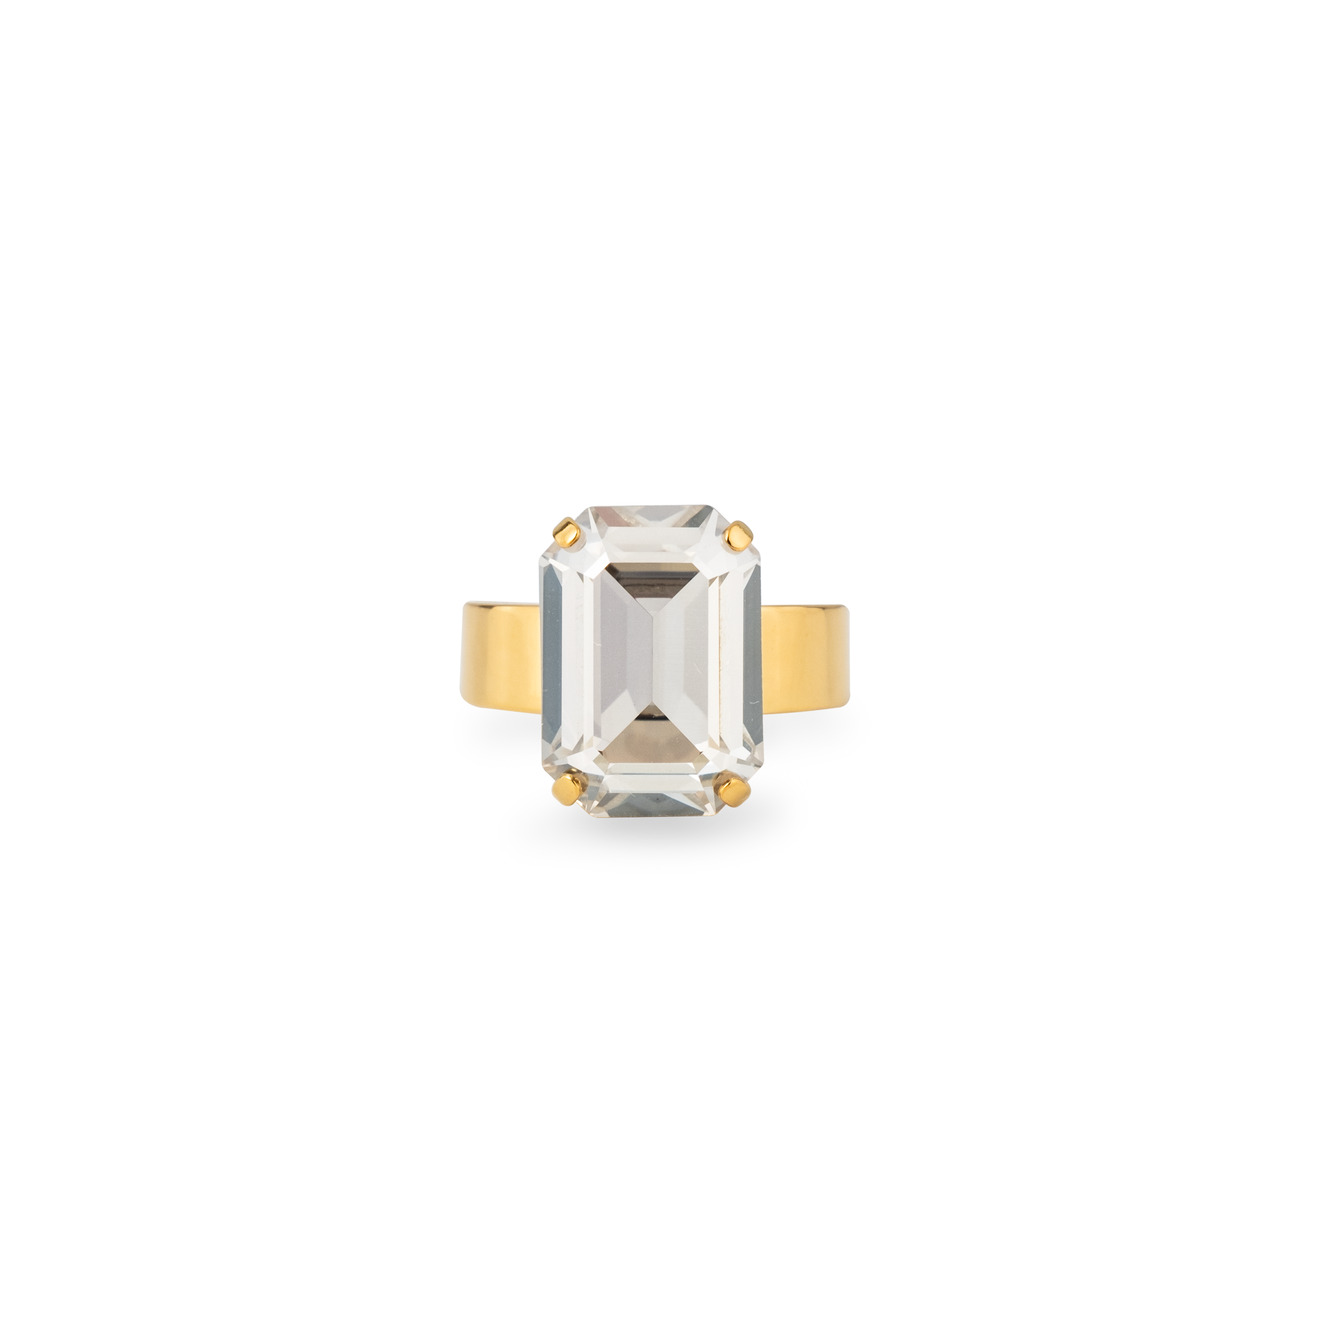 Phenomenal Studio Позолоченное кольцо с регулируемым размером Octagon Gold phenomenal studio позолоченное кольцо с кристаллами